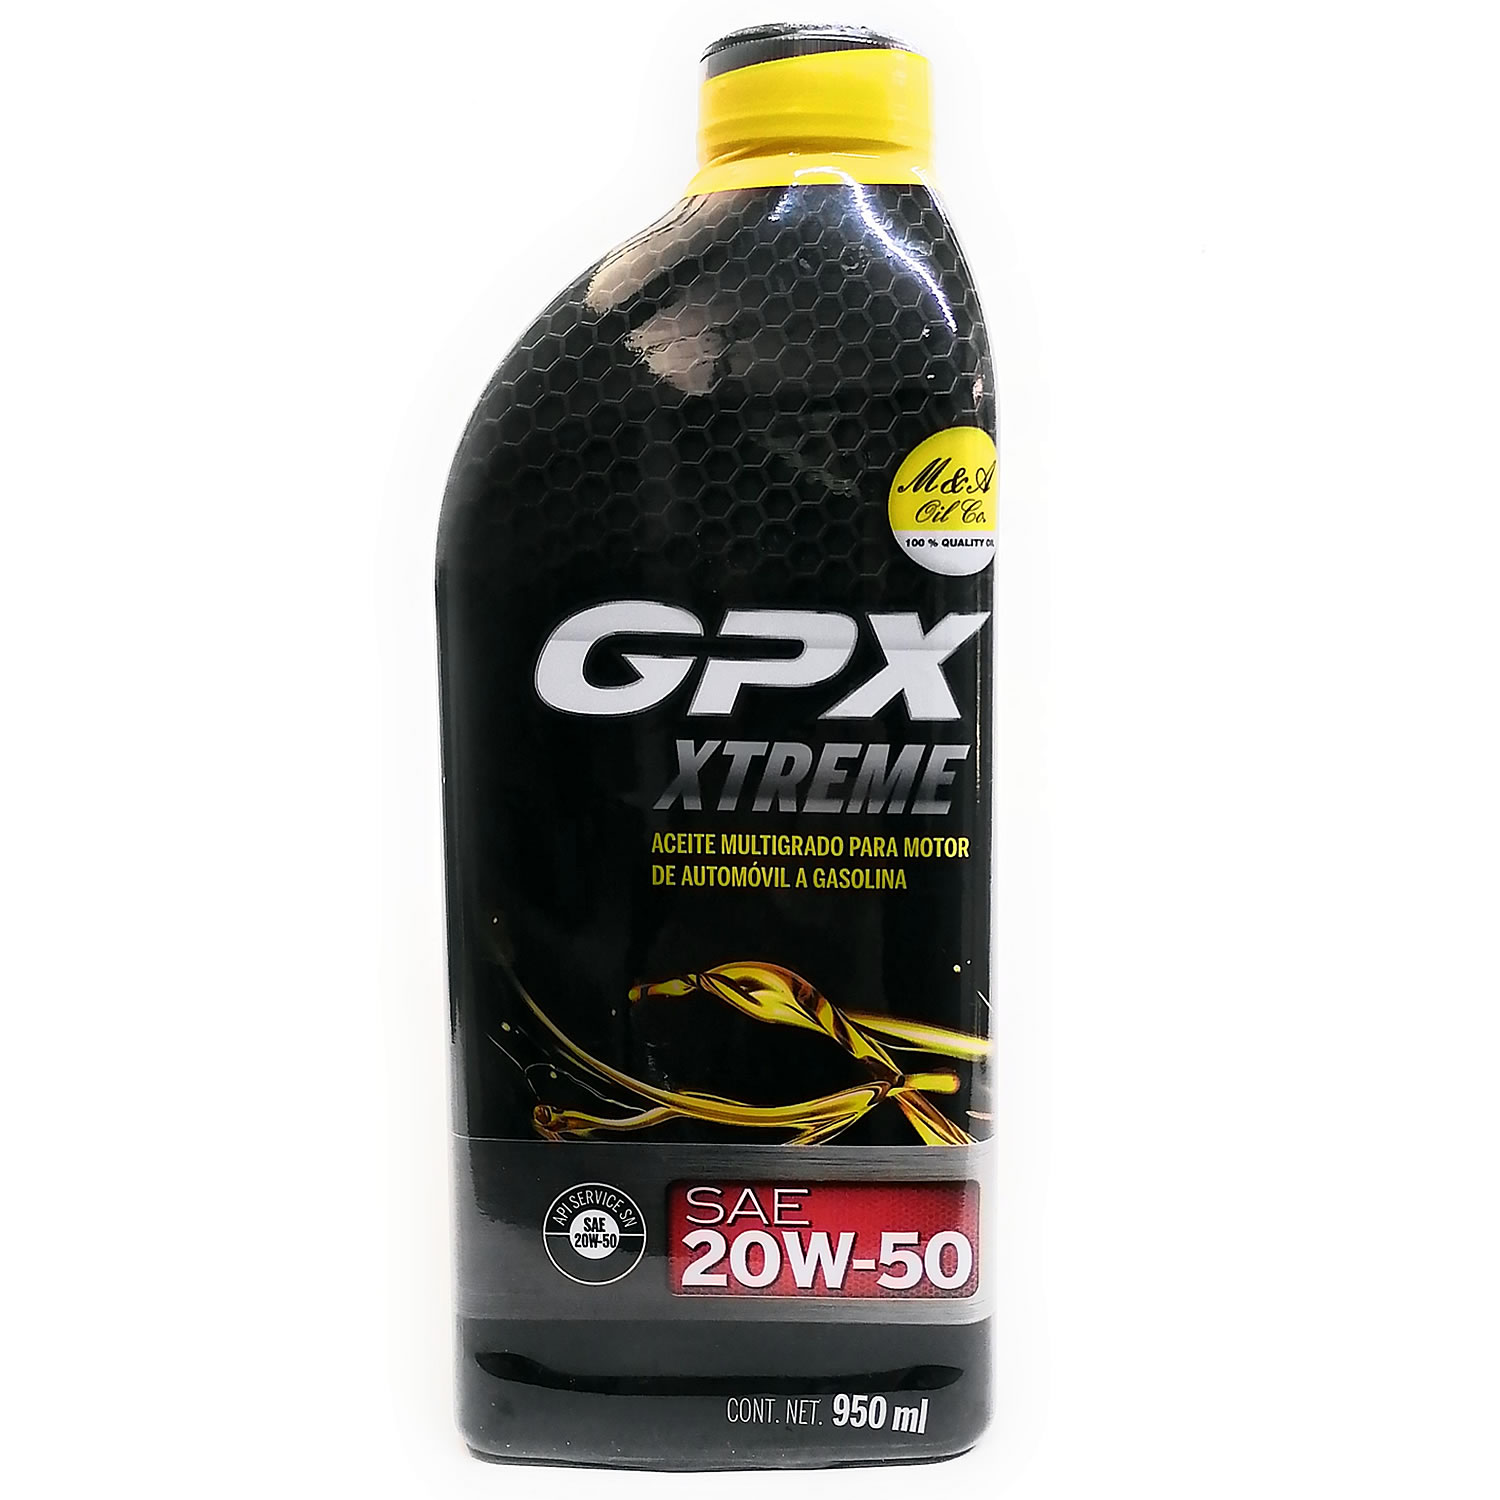 GPX EXTREME 20W50